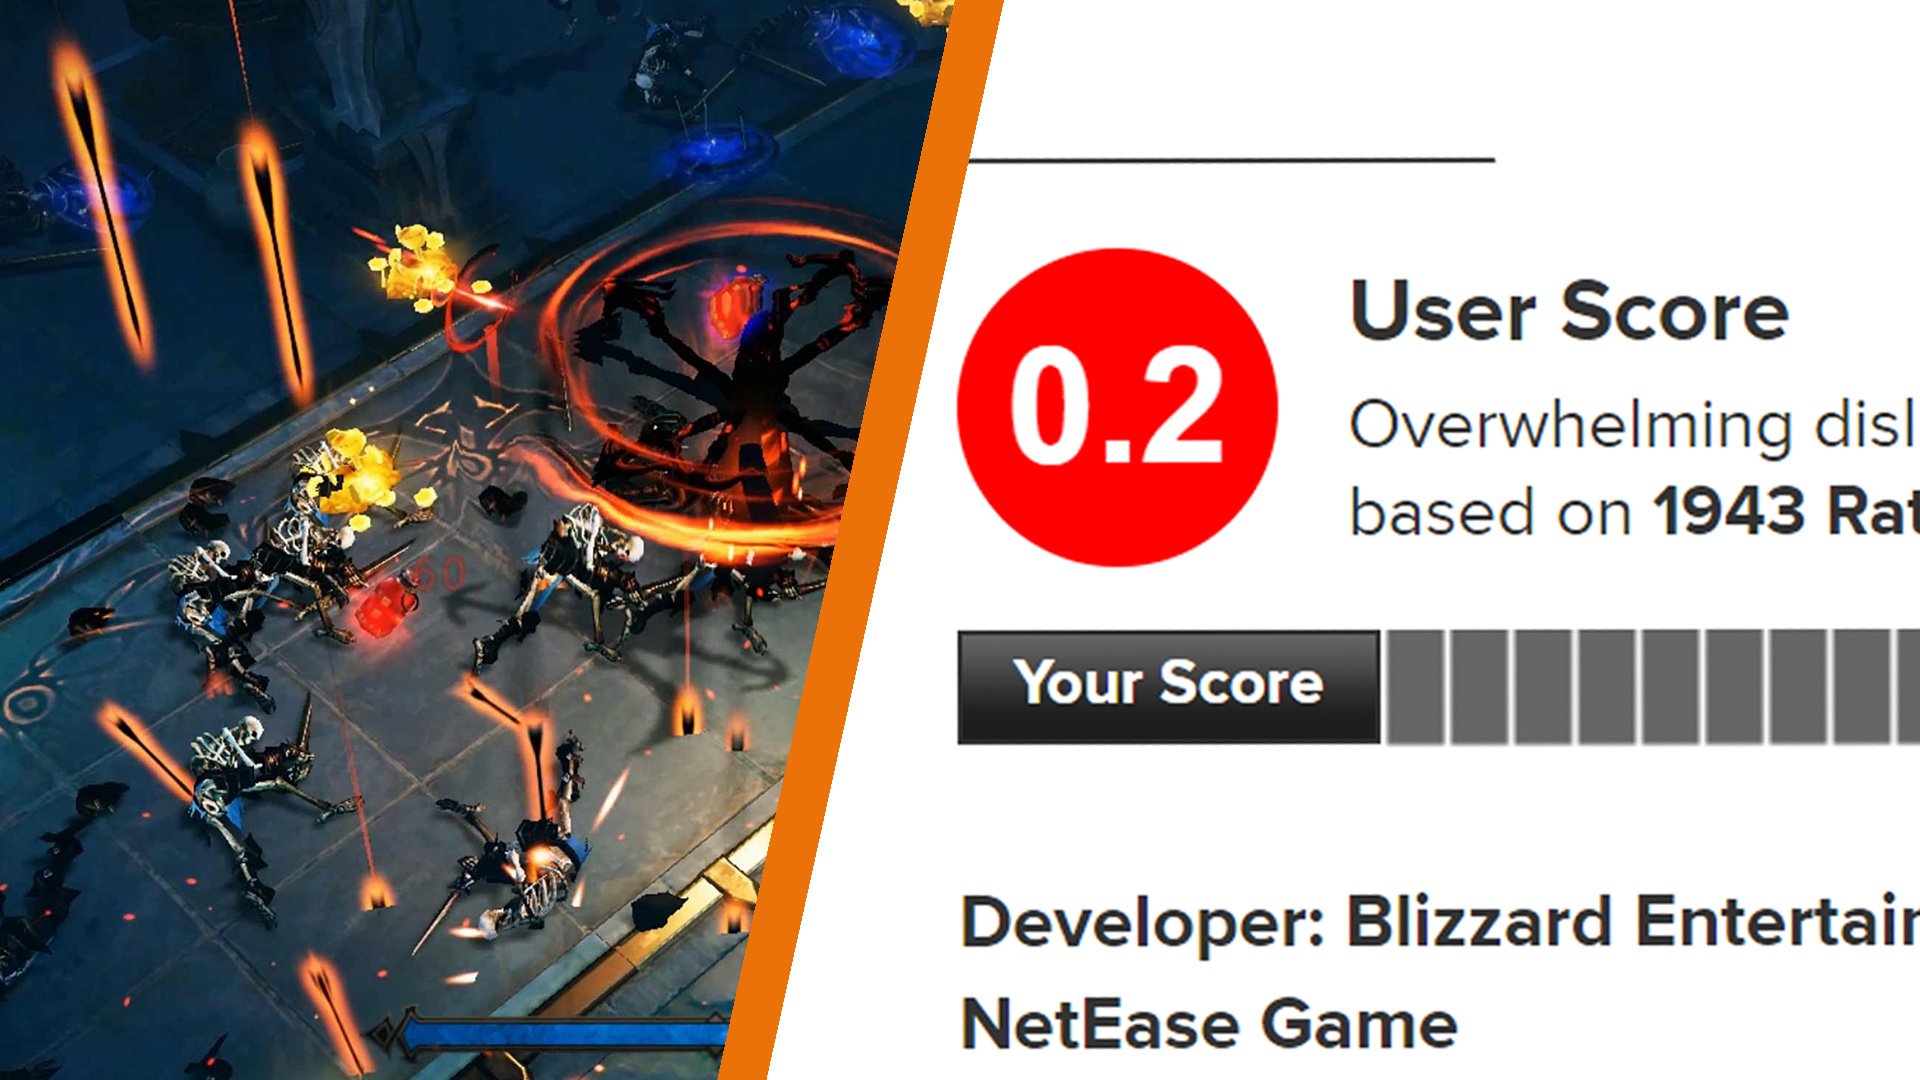 Players (2022) - Metacritic